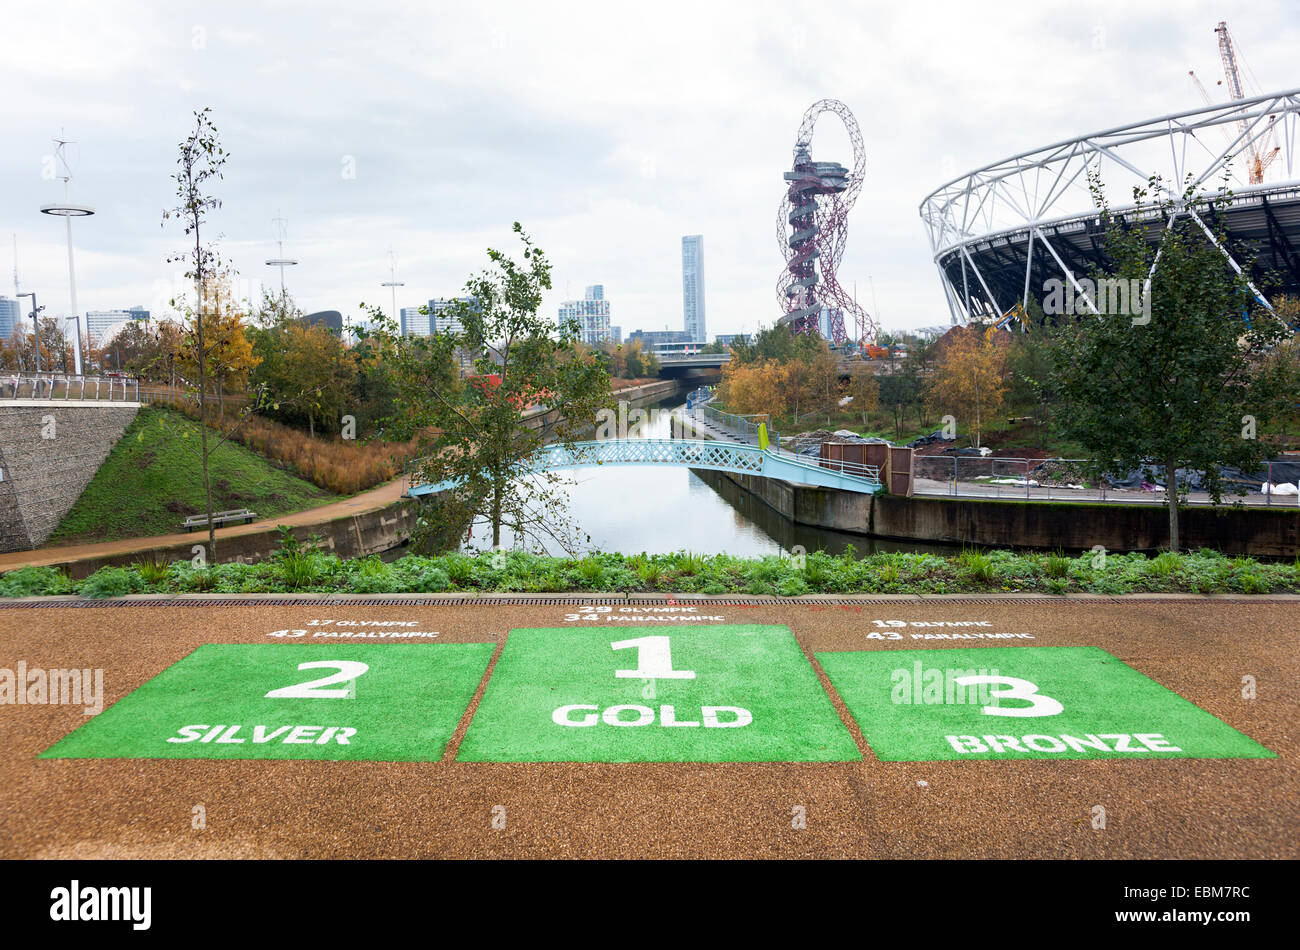 Olympic Park in Stratford, London, England - wurden vom Vereinigten Königreich in die Olympischen Spiele 2012 Fakten sagen, wie viele Medaillen gewonnen. Stockfoto